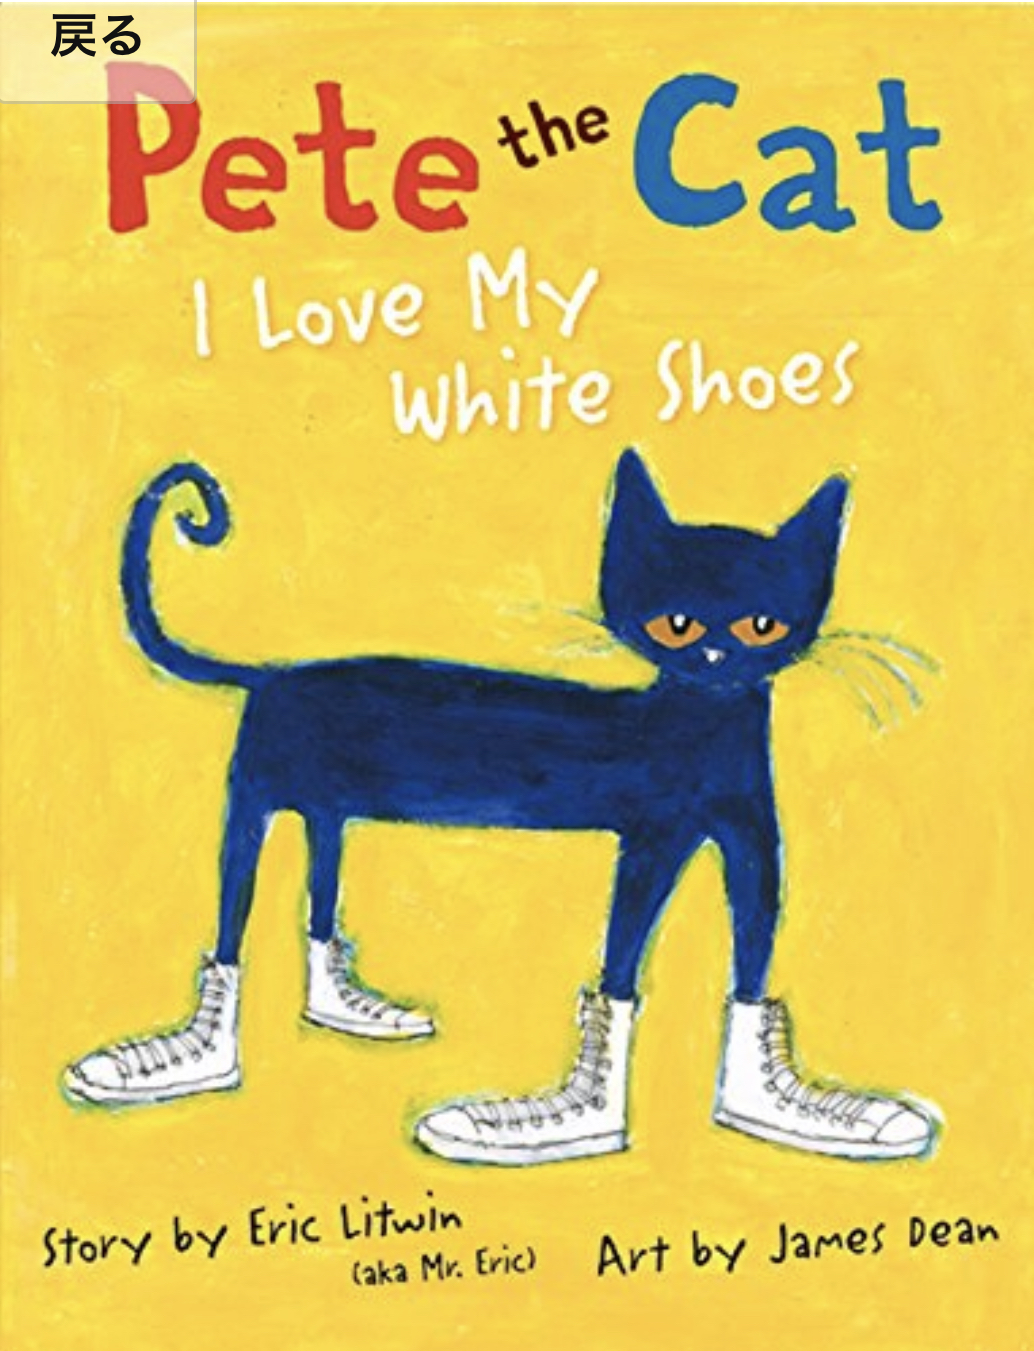 Pete the Cat 写真